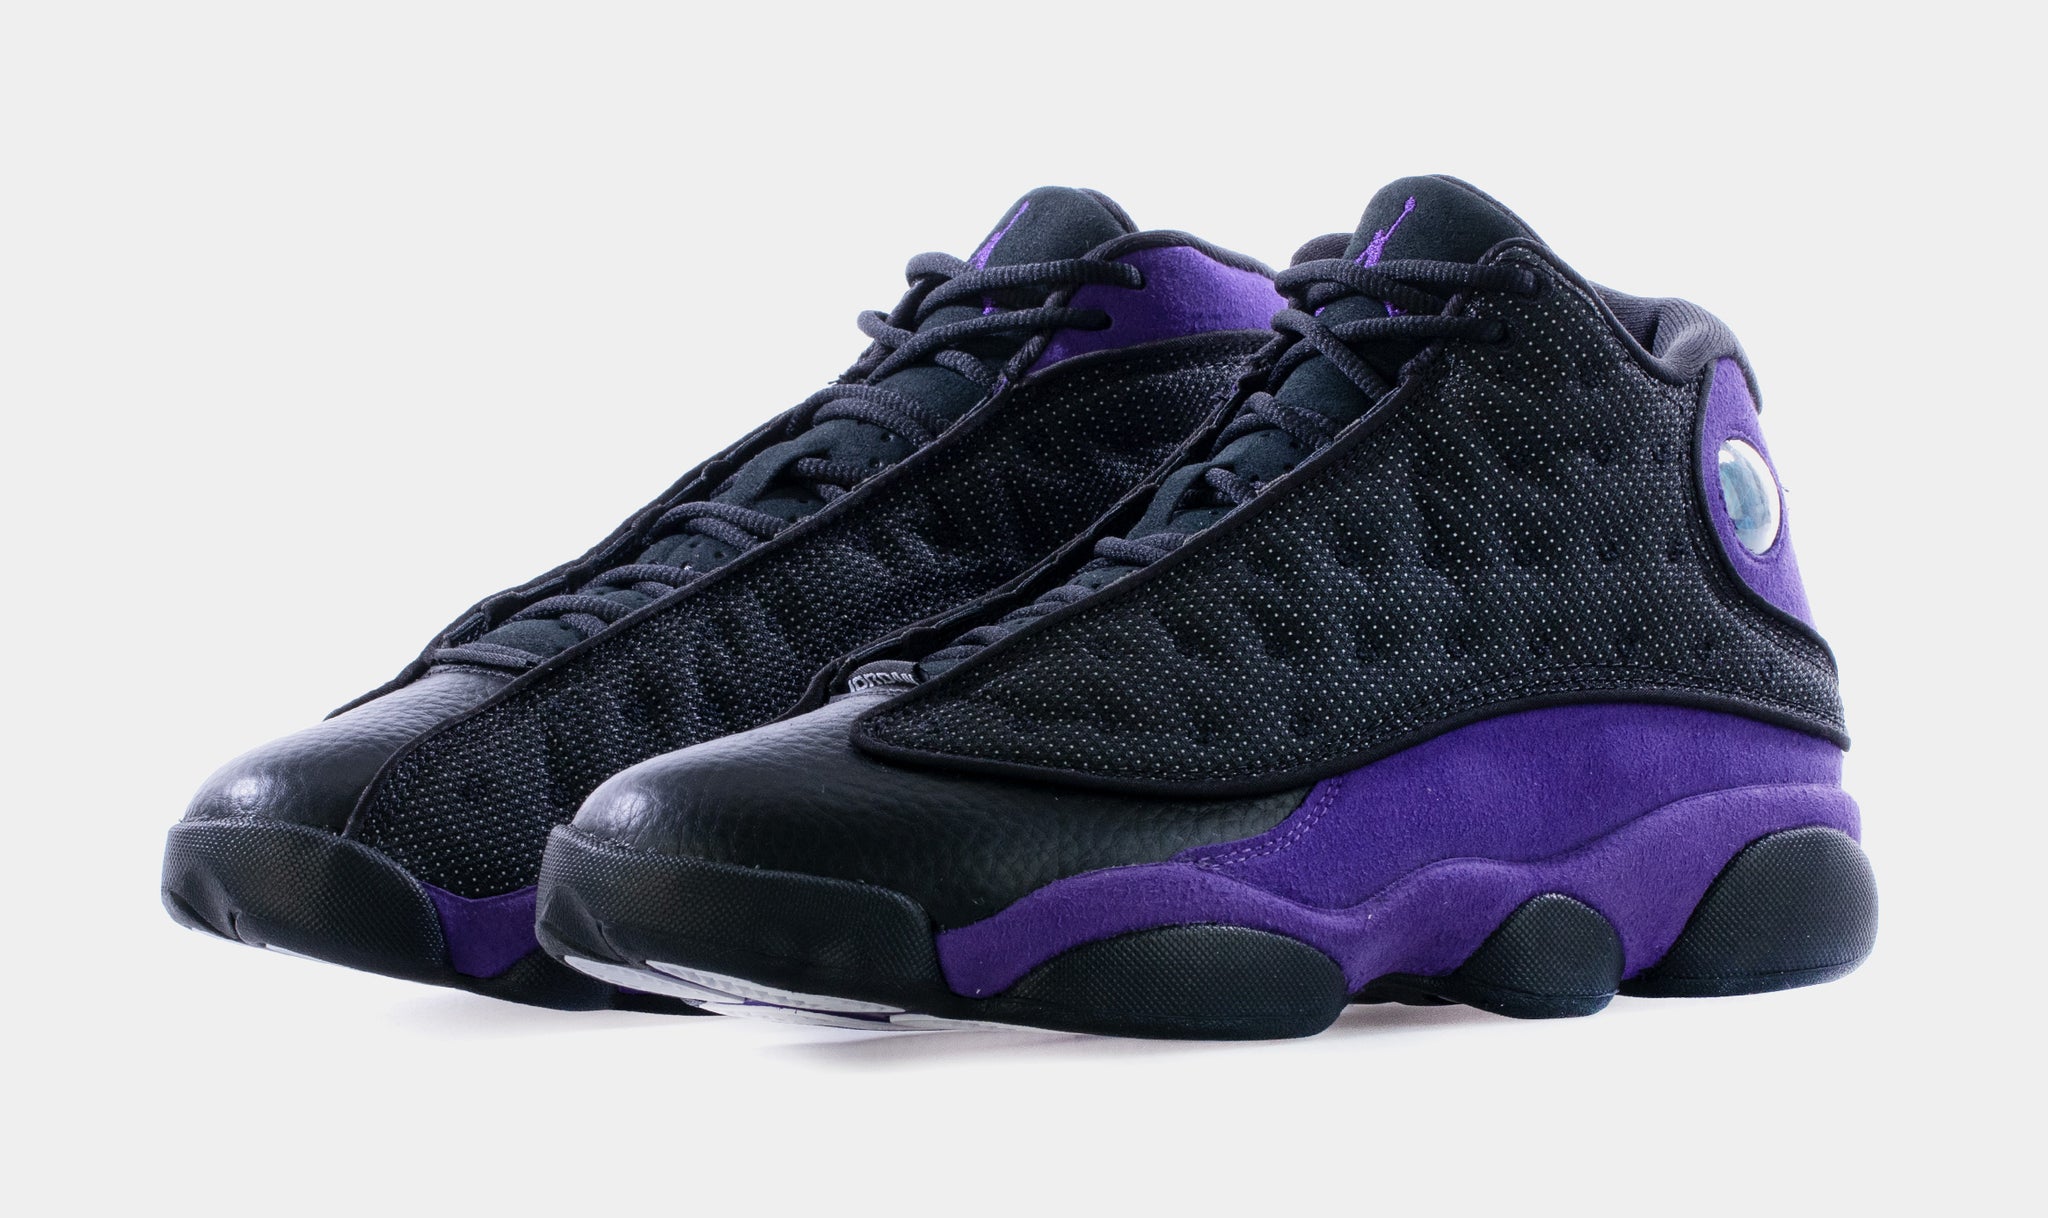 Jordan 13 Retro Black/Court Purple/White Men's Shoe - Hibbett